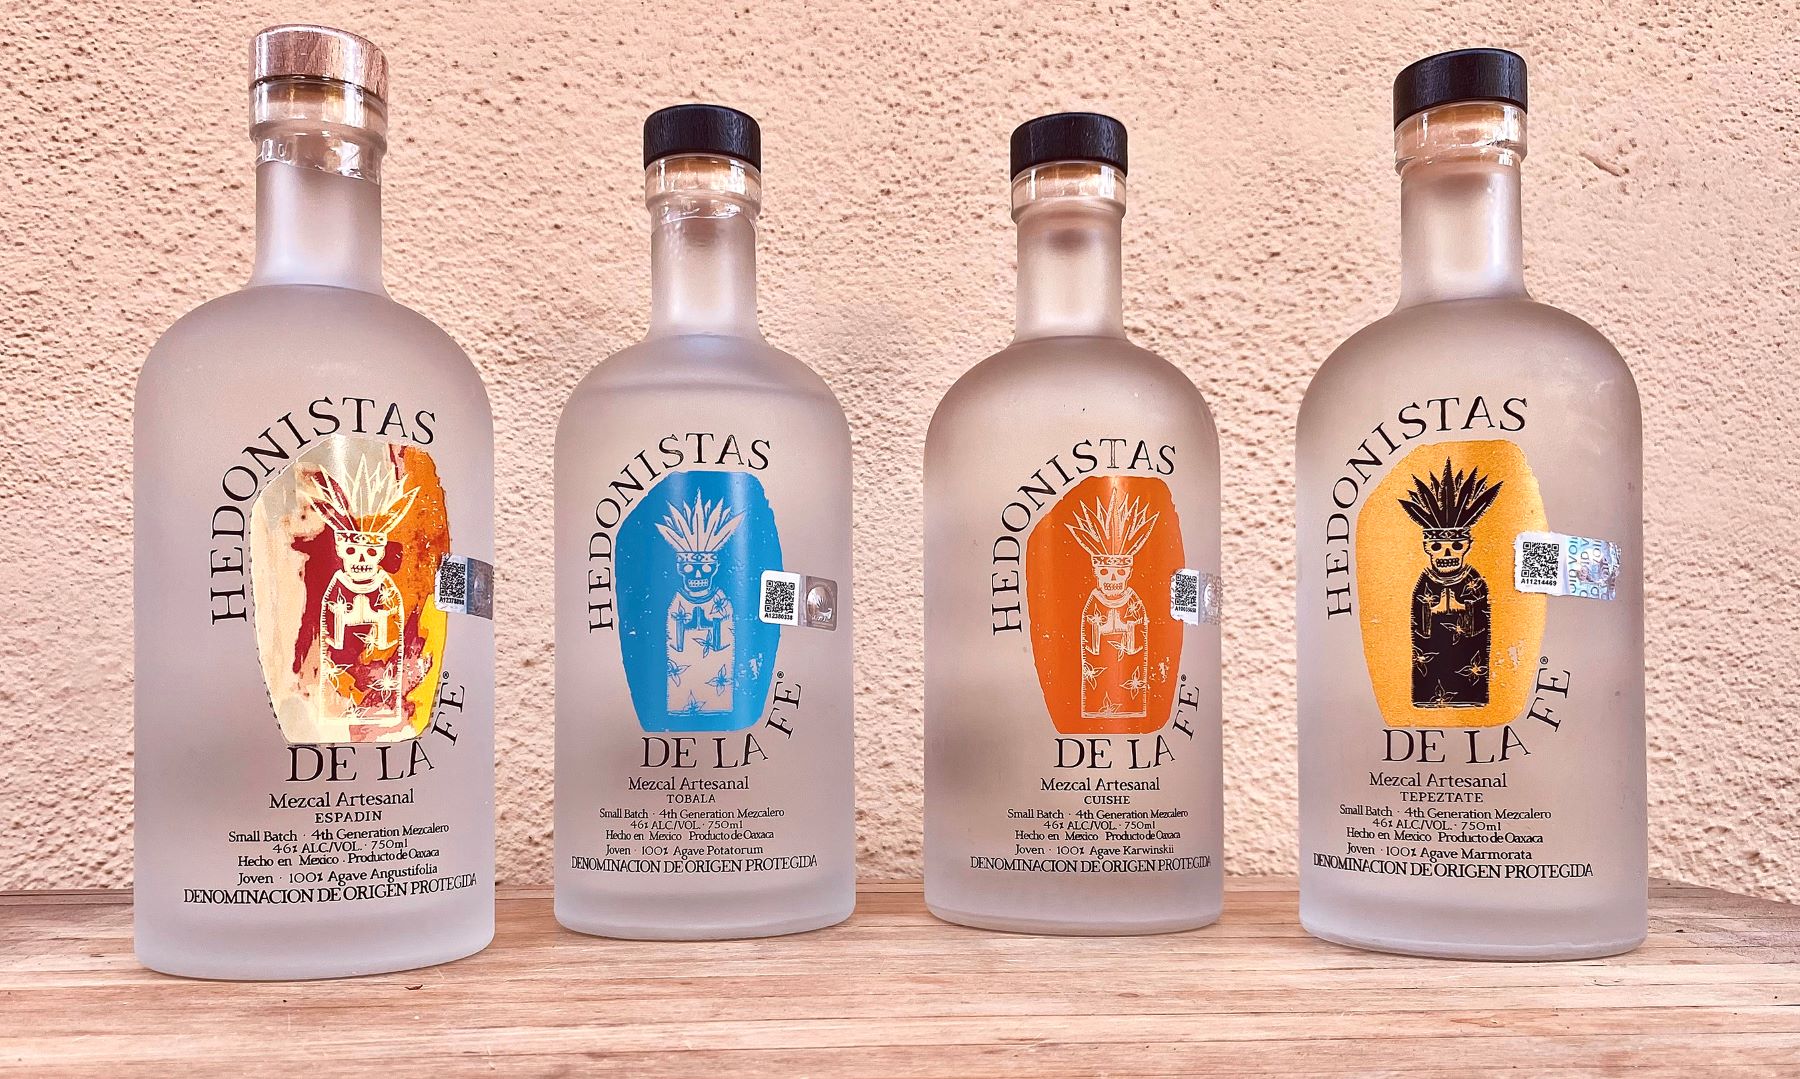 An image of four bottles of Hedonistas de la Fe Mezcal